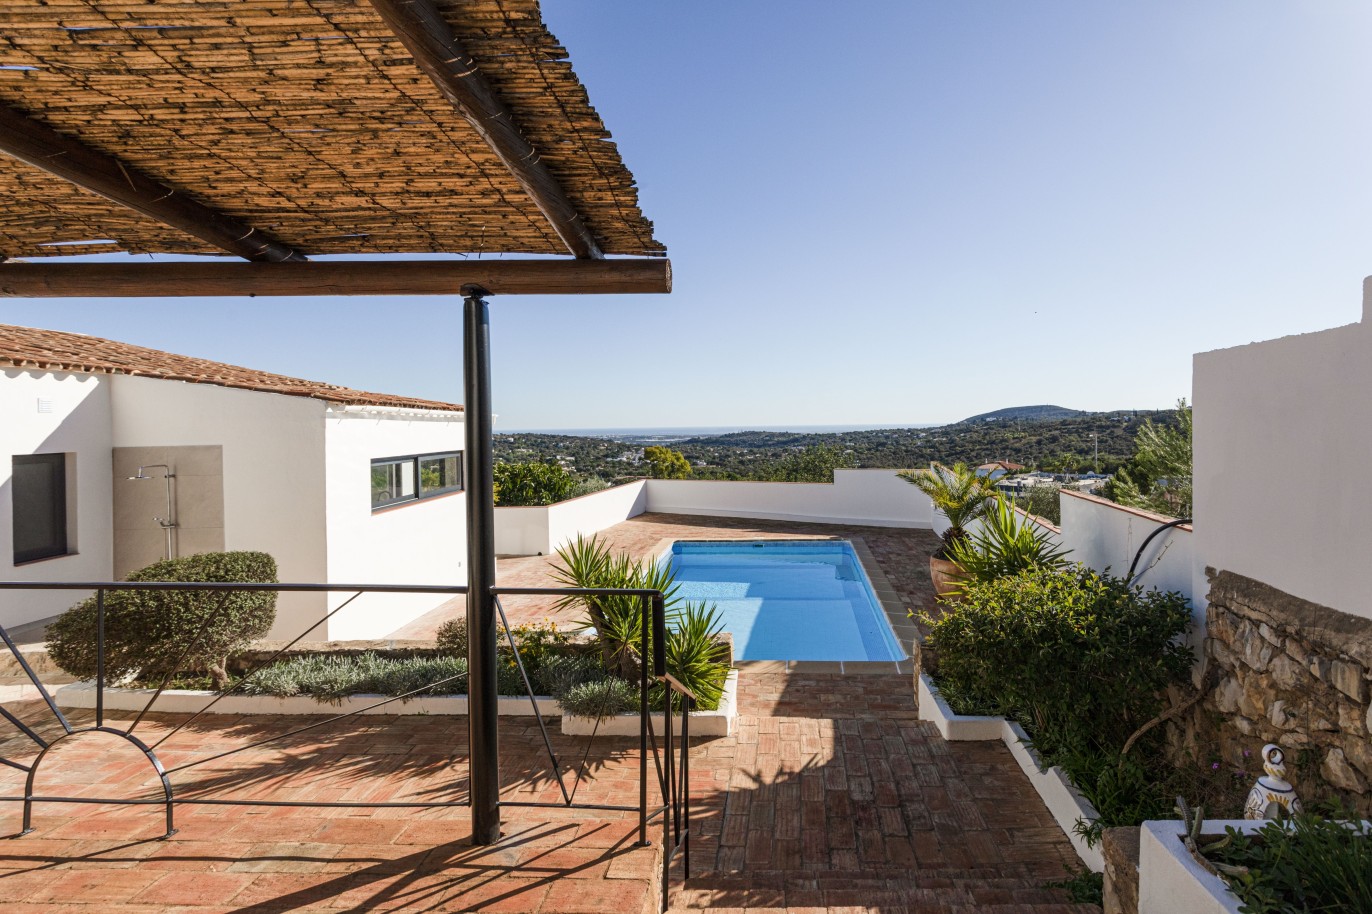 3 bedroom villa with sea view and pool, for sale in Santa Barbara, Algarve_246331